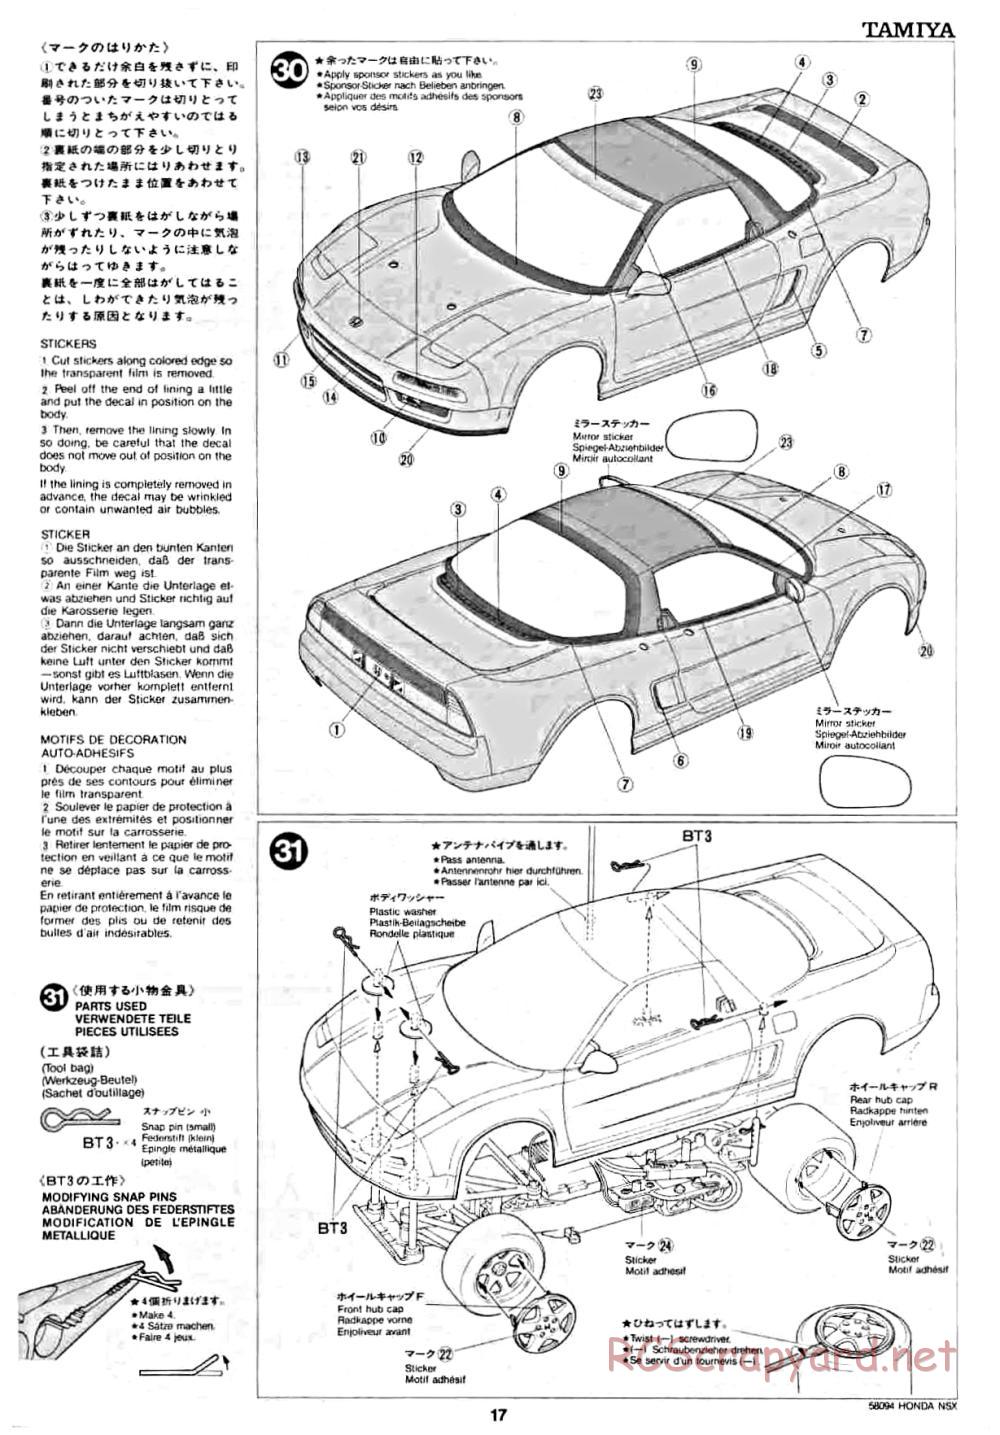 Tamiya - Honda NSX - 58094 - Manual - Page 17